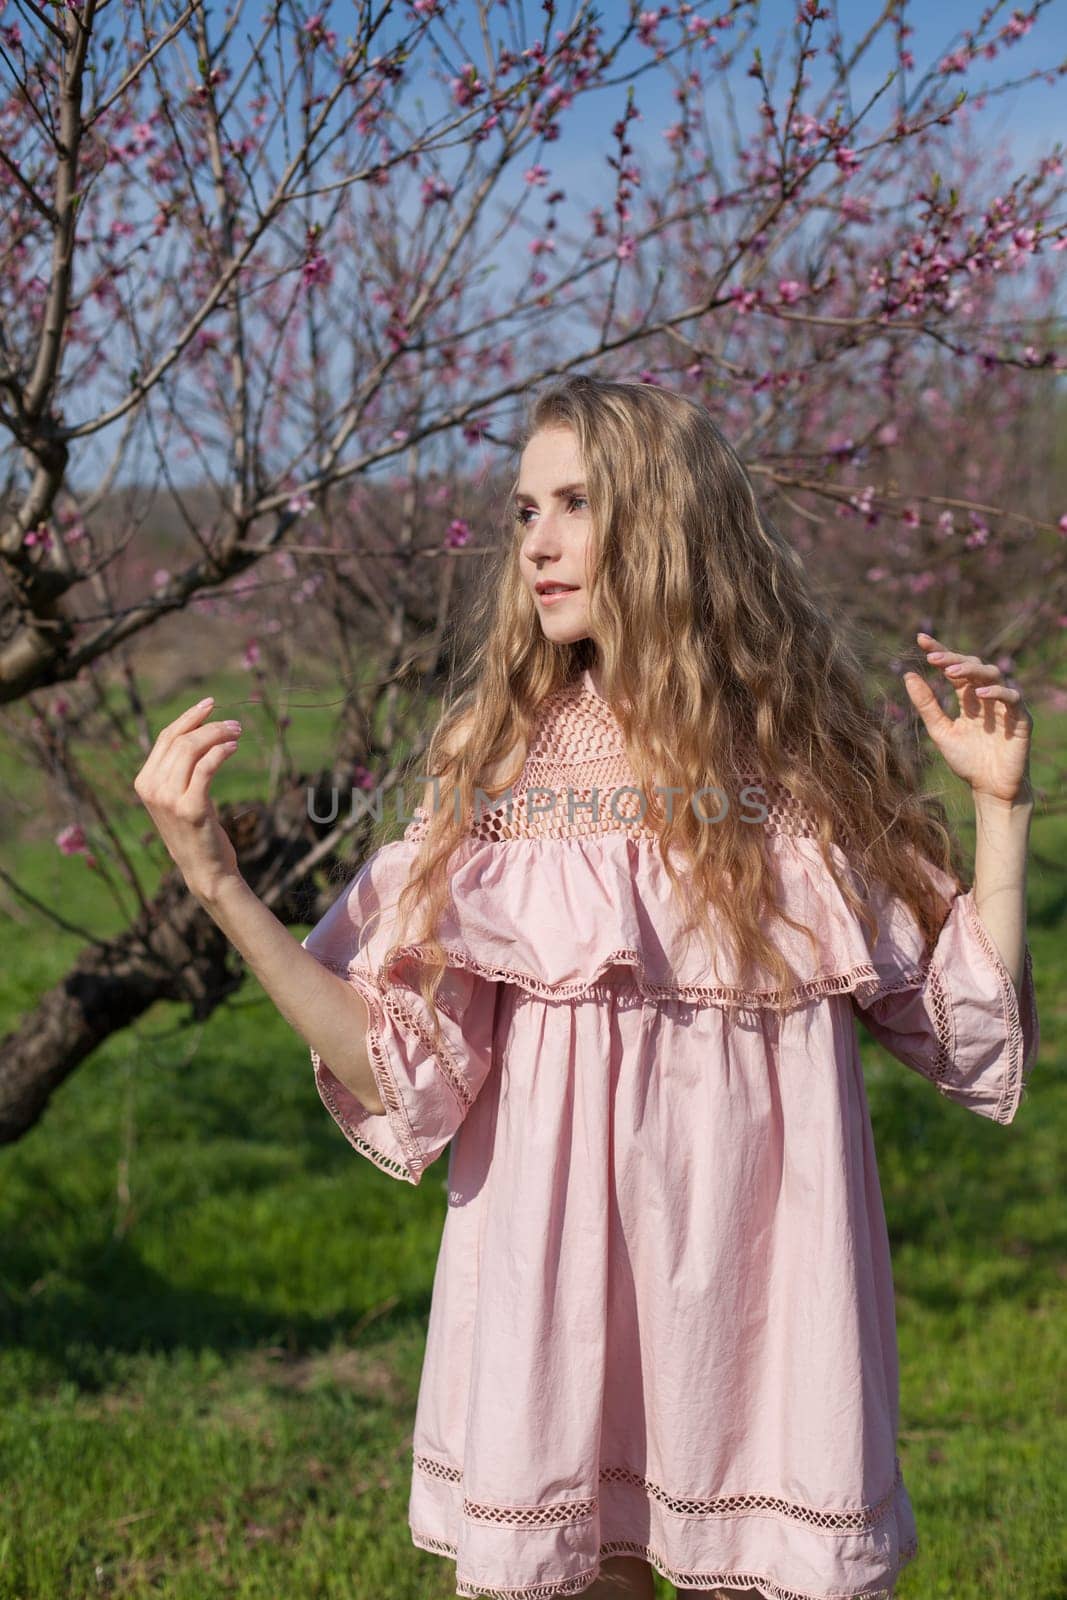 A woman blonde in a pink dress walks through the flowering peach garden